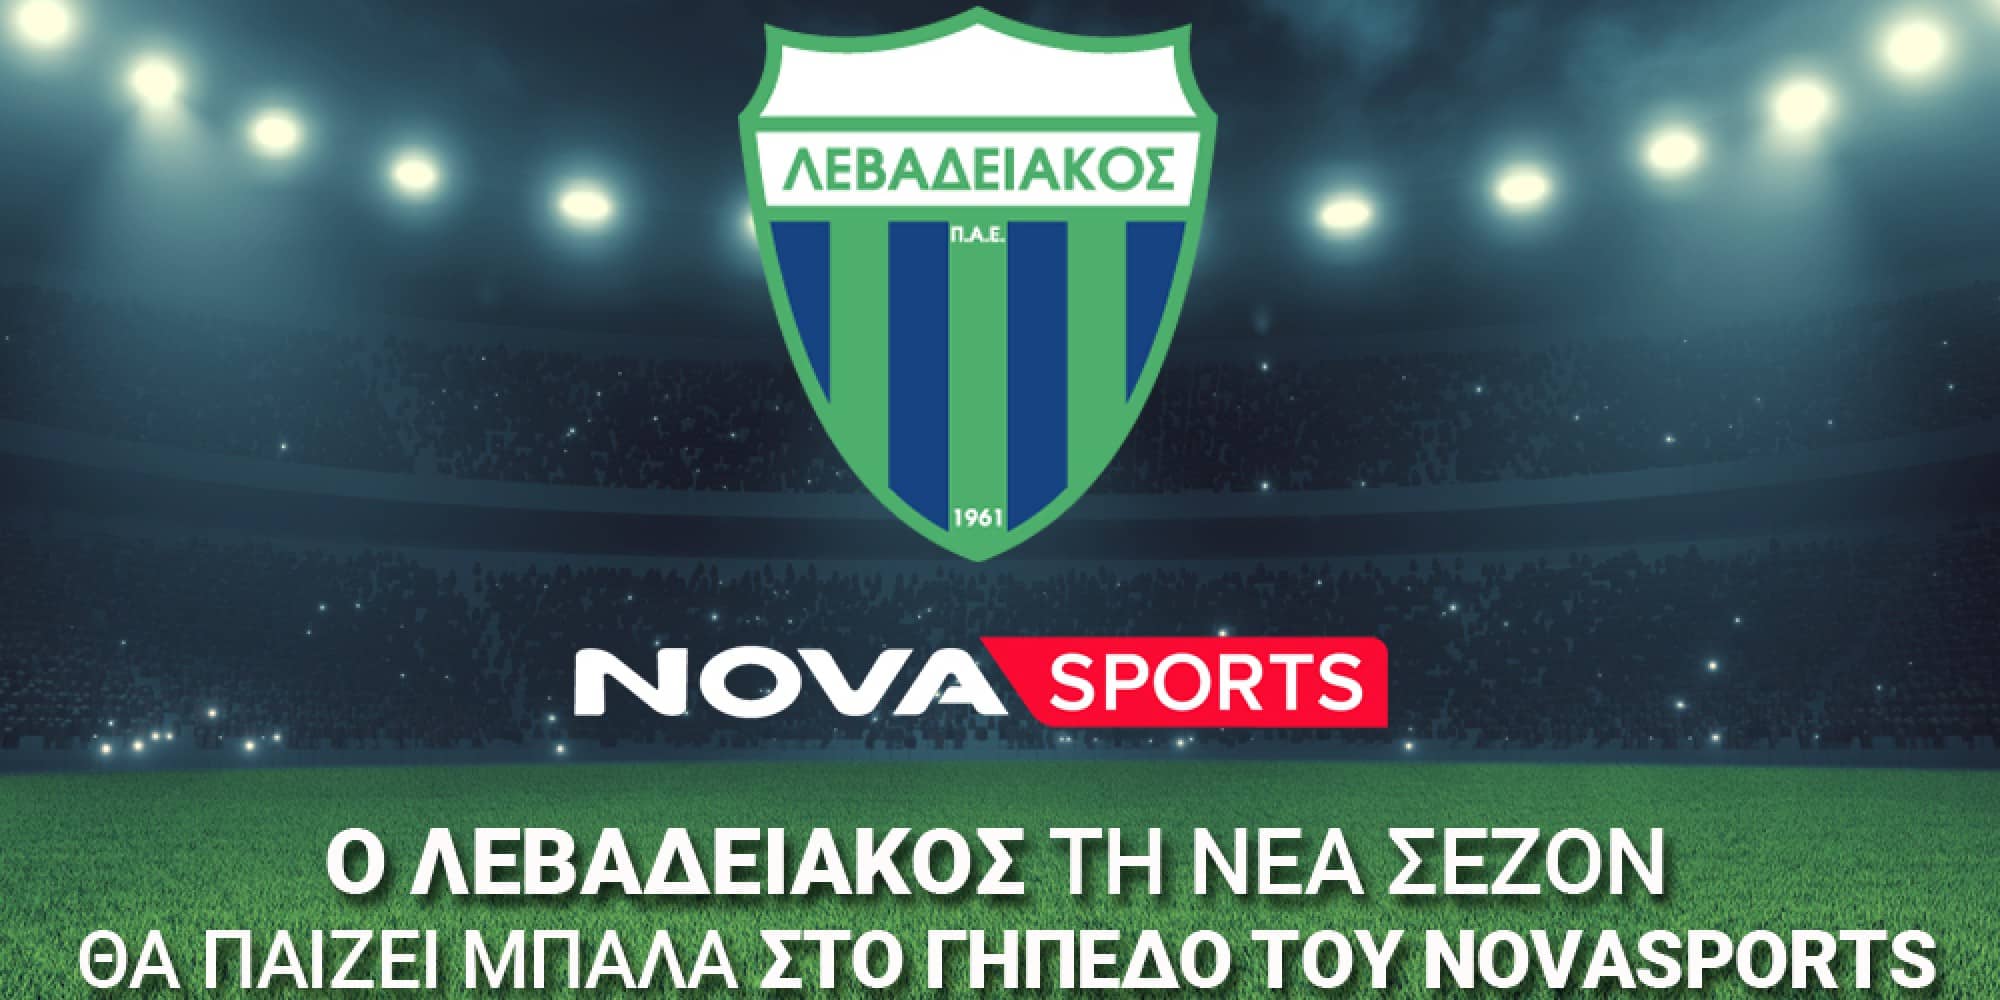 Ο Λεβαδειακός τη νέα σεζόν θα παίζει μπάλα στο «γήπεδο» του Novasports